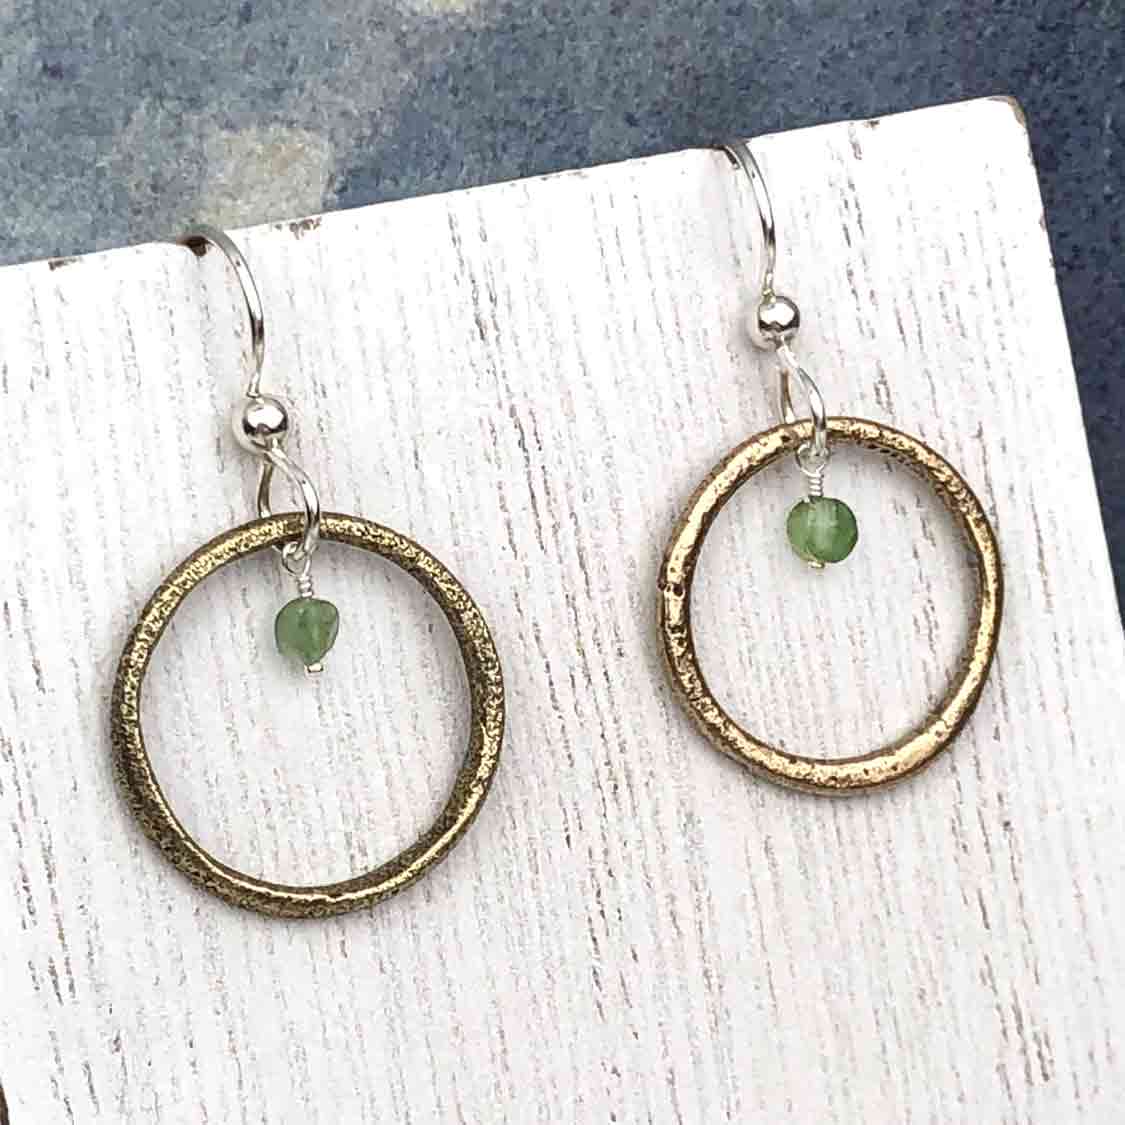 Bright Golden Bronze Celtic Ring Money Earrings with Genuine Green Garnet